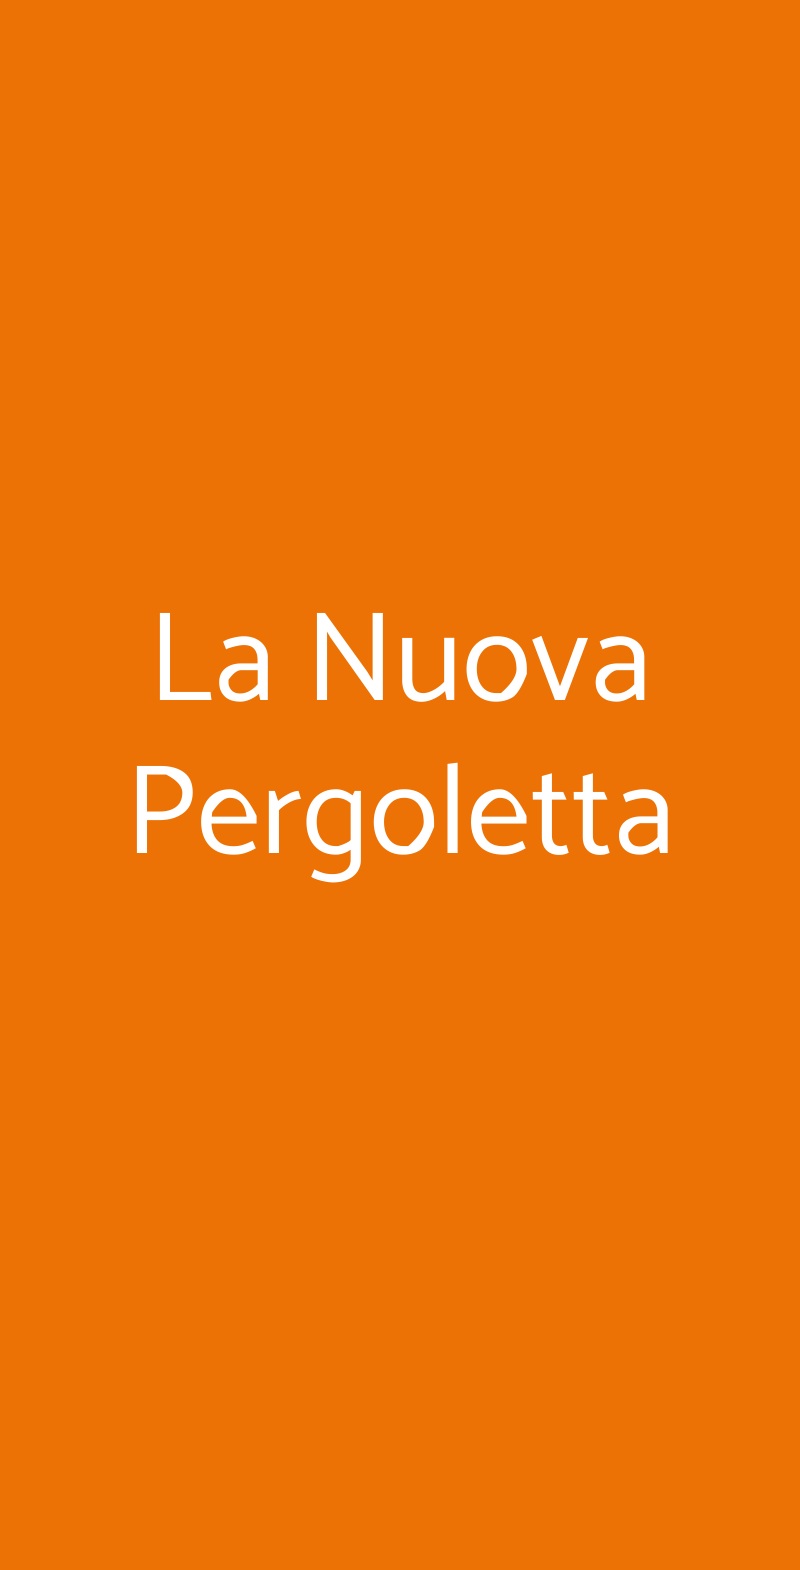 La Nuova Pergoletta Roma menù 1 pagina